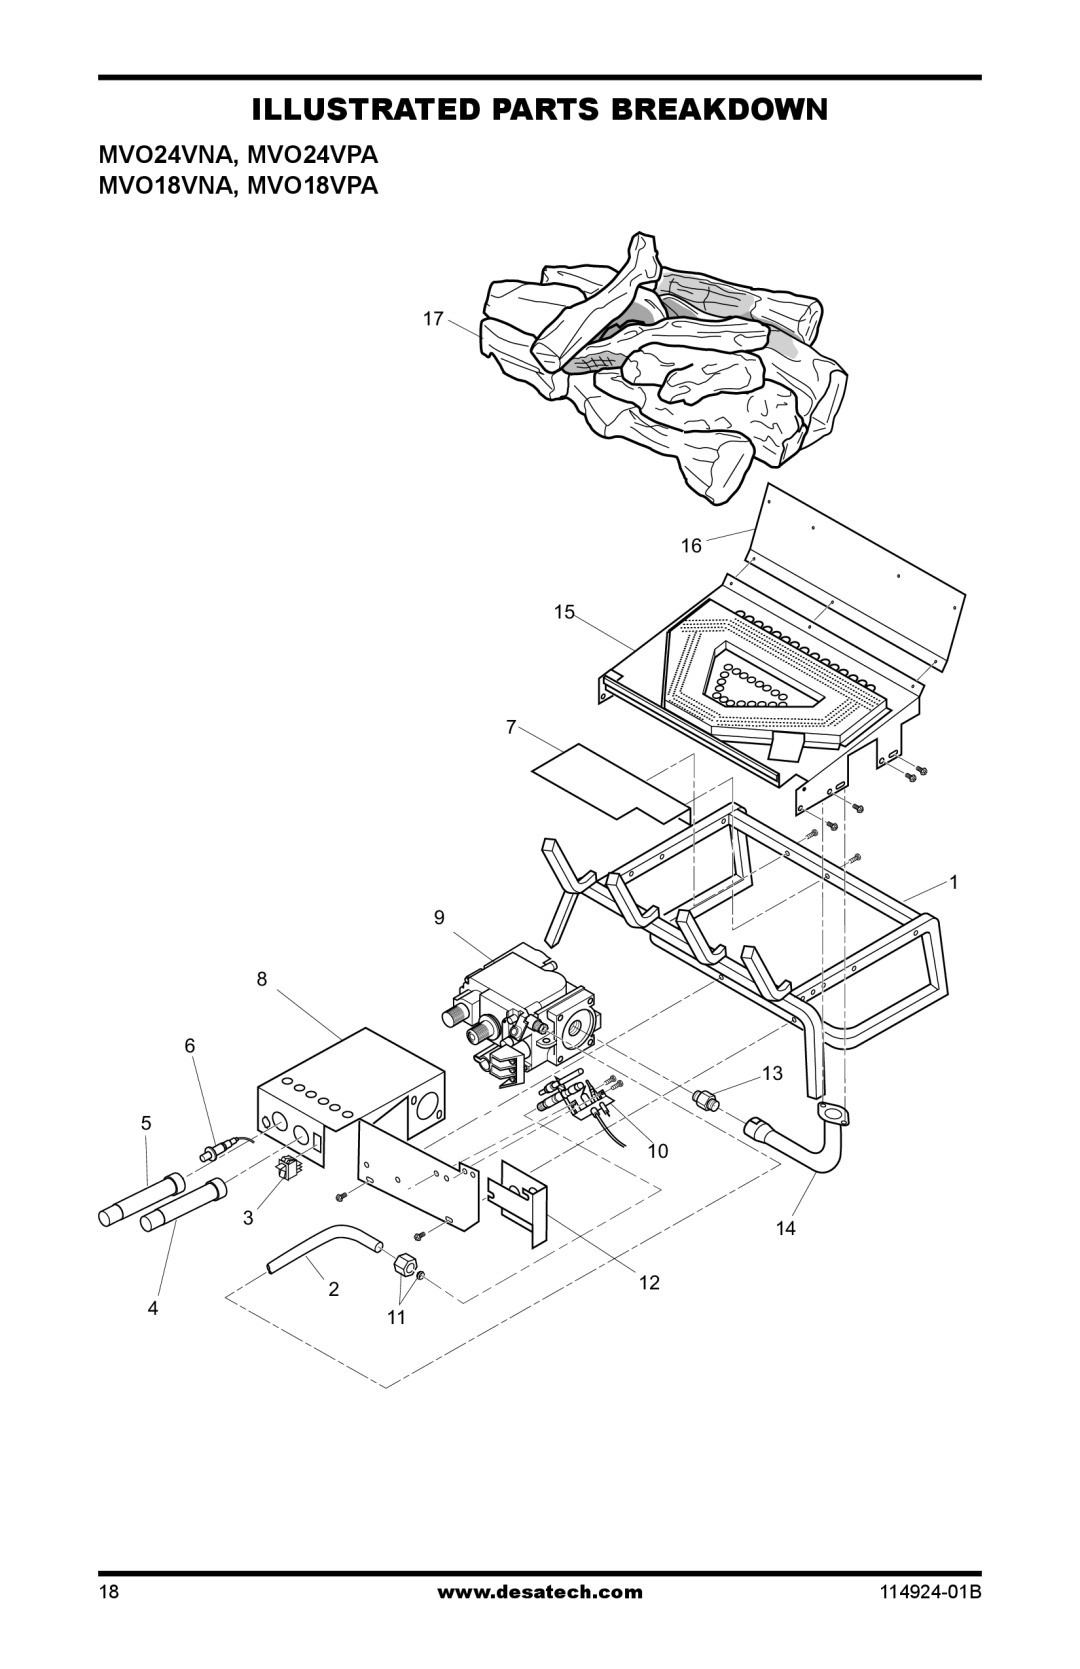 Desa installation manual Illustrated Parts Breakdown, MVO24VNA, MVO24VPA MVO18VNA, MVO18VPA 